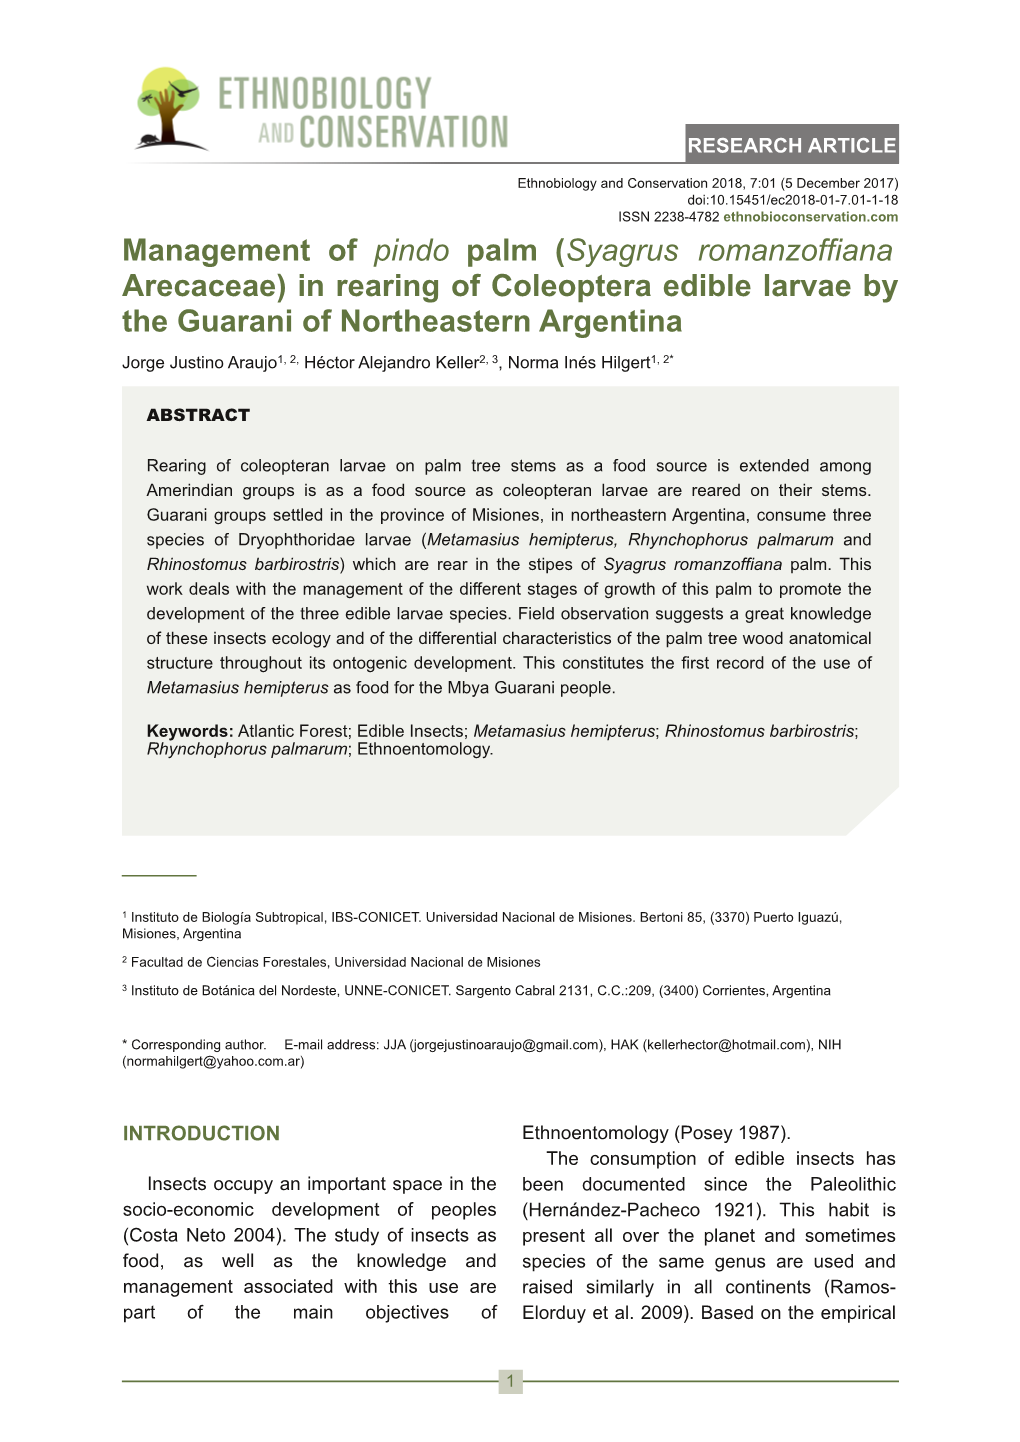 Management of Pindo Palm (Syagrus Romanzoffiana Arecaceae)